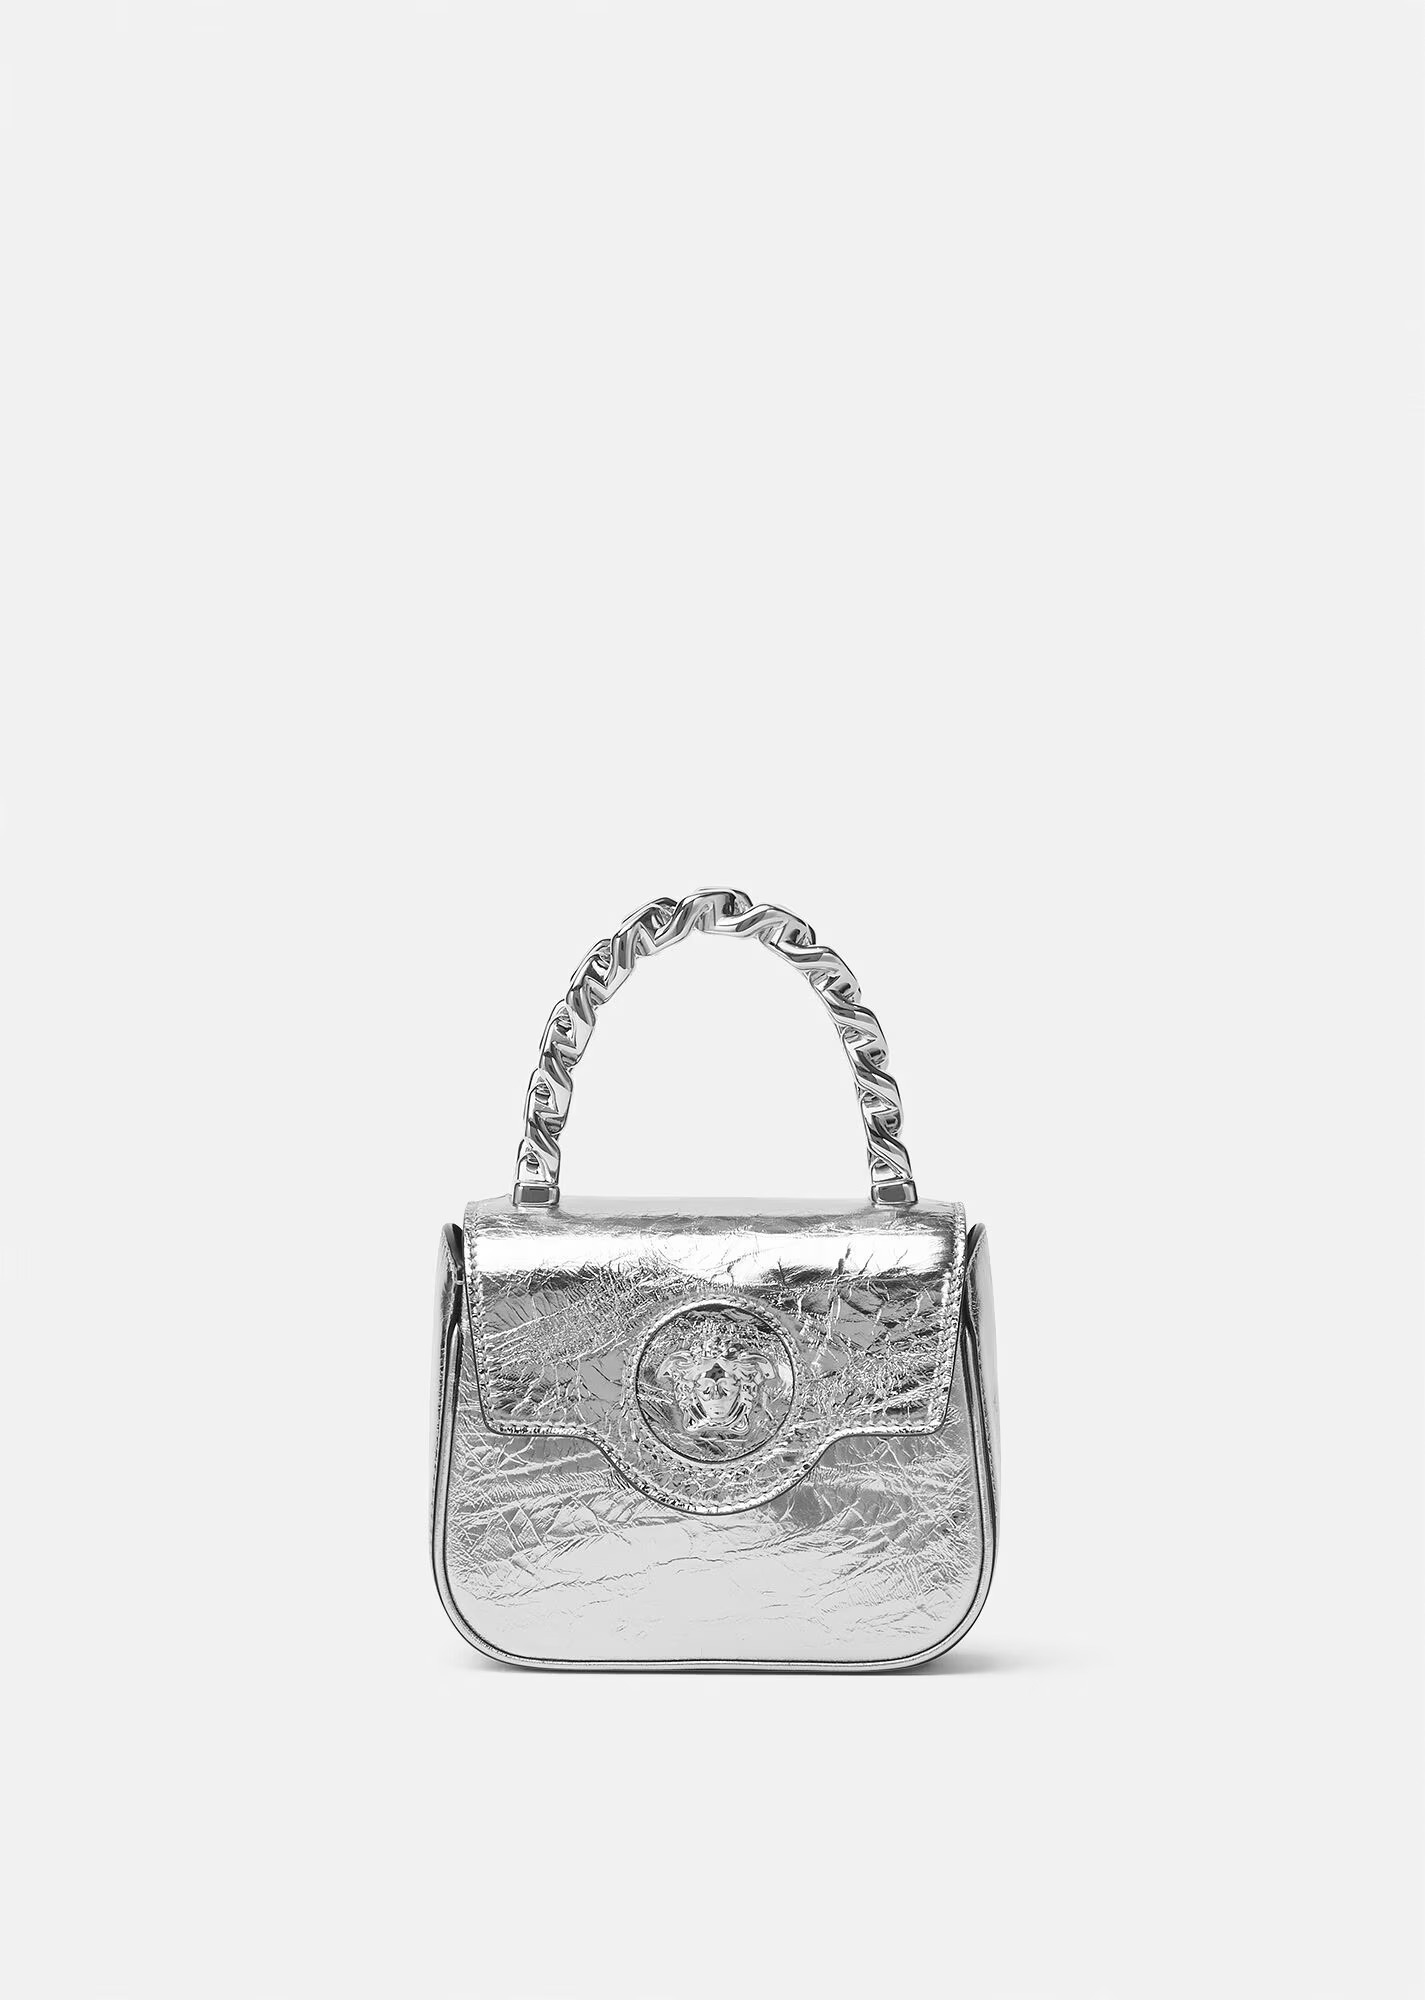 A bag women's silver La Medusa 16 cm